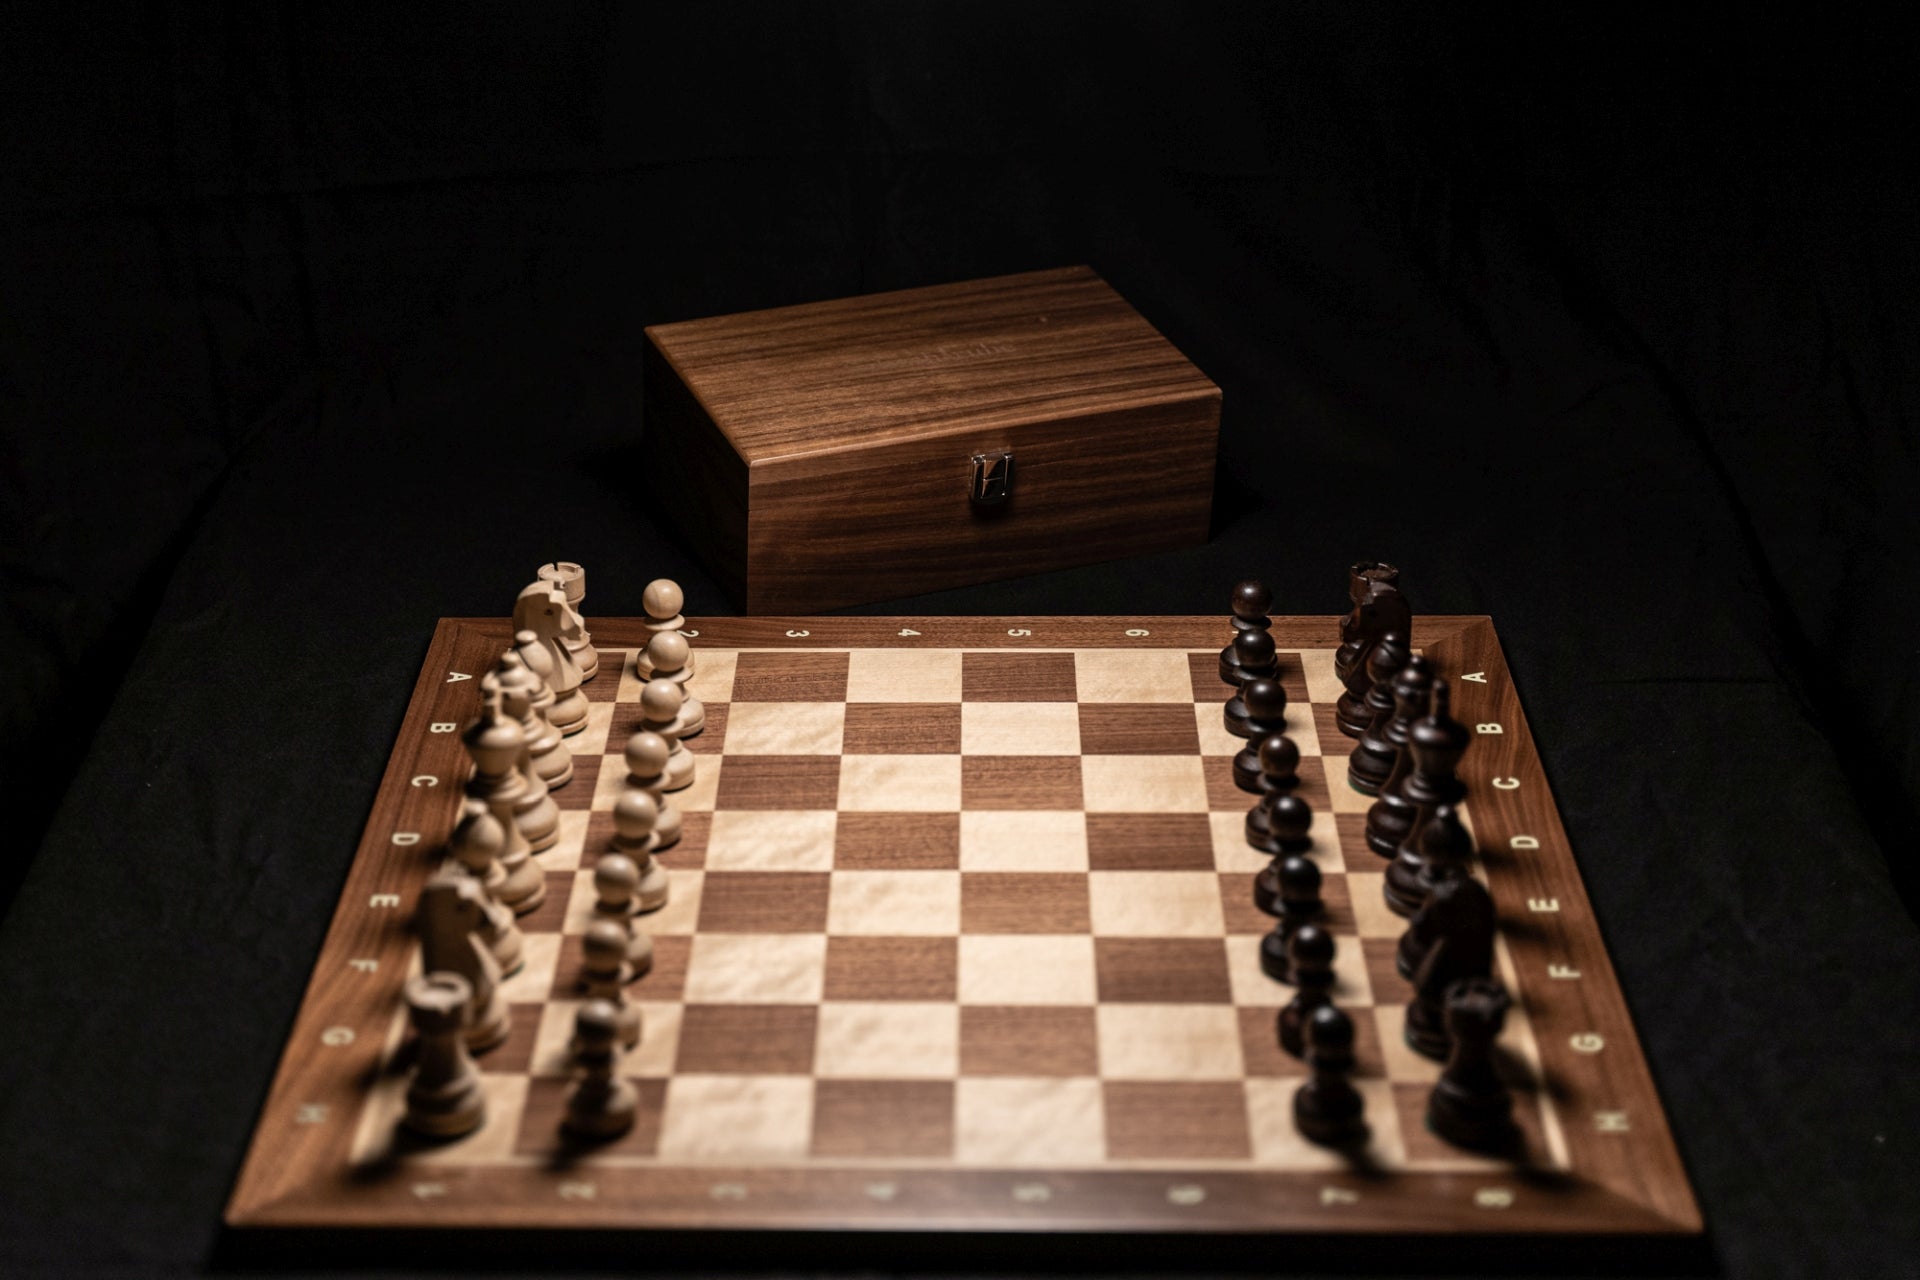 Produktvideo des Schachspiels Manatos